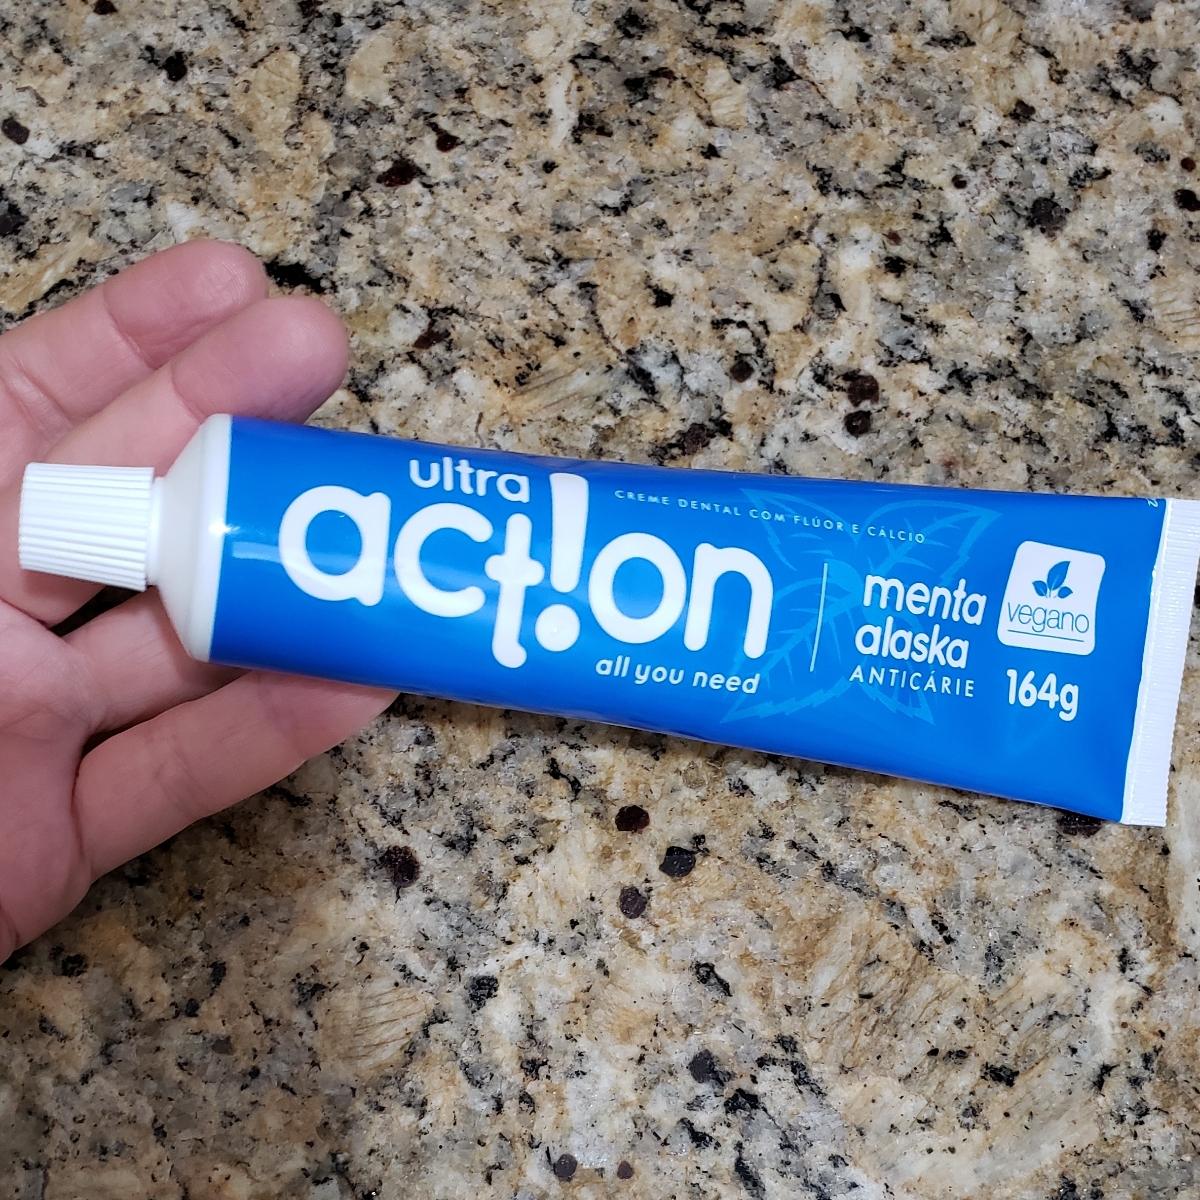 Ultra action Creme Dental com Flúor e Cálcio Menta Alaska Anticárie Reviews  | abillion